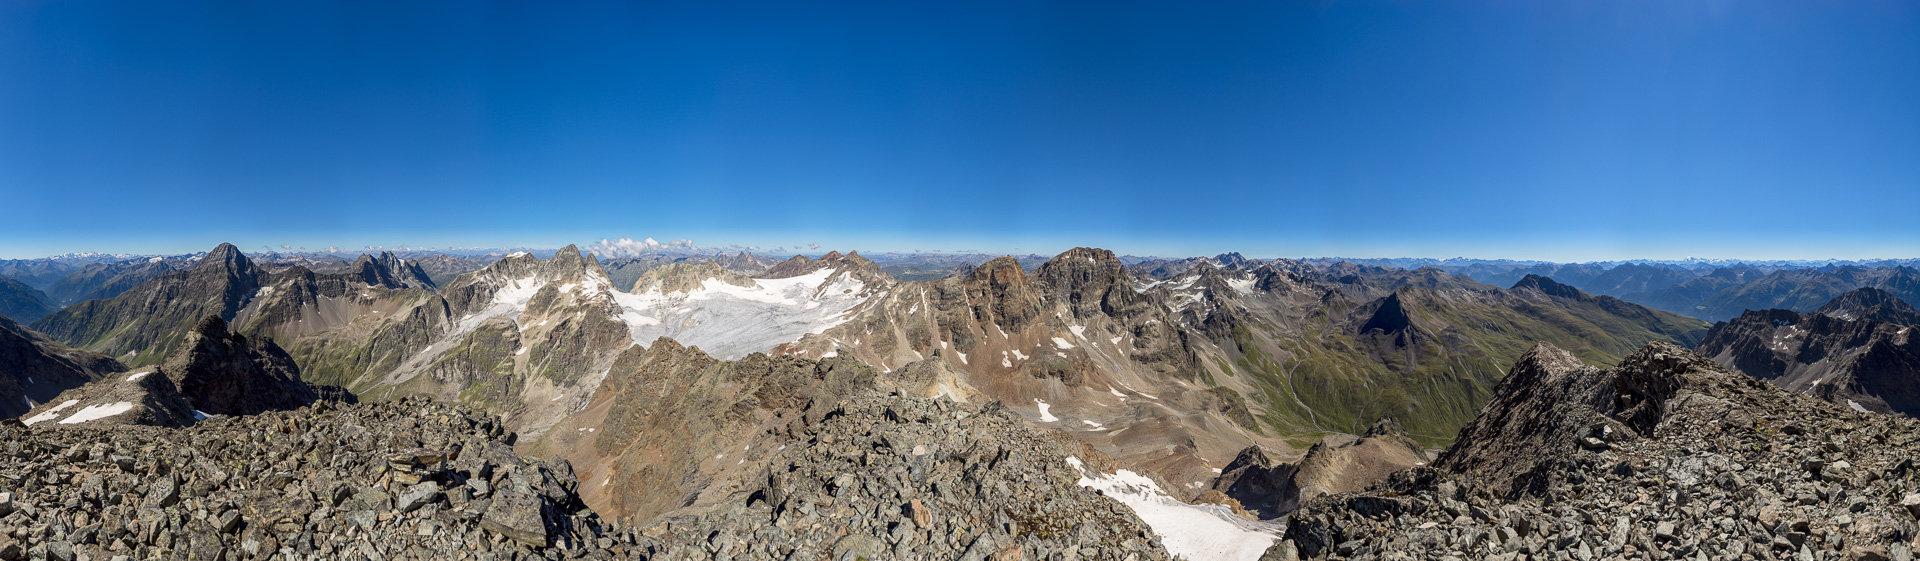 Herrliches Gipfelpanorama von einem der schönsten Silvretta-Gipfel.